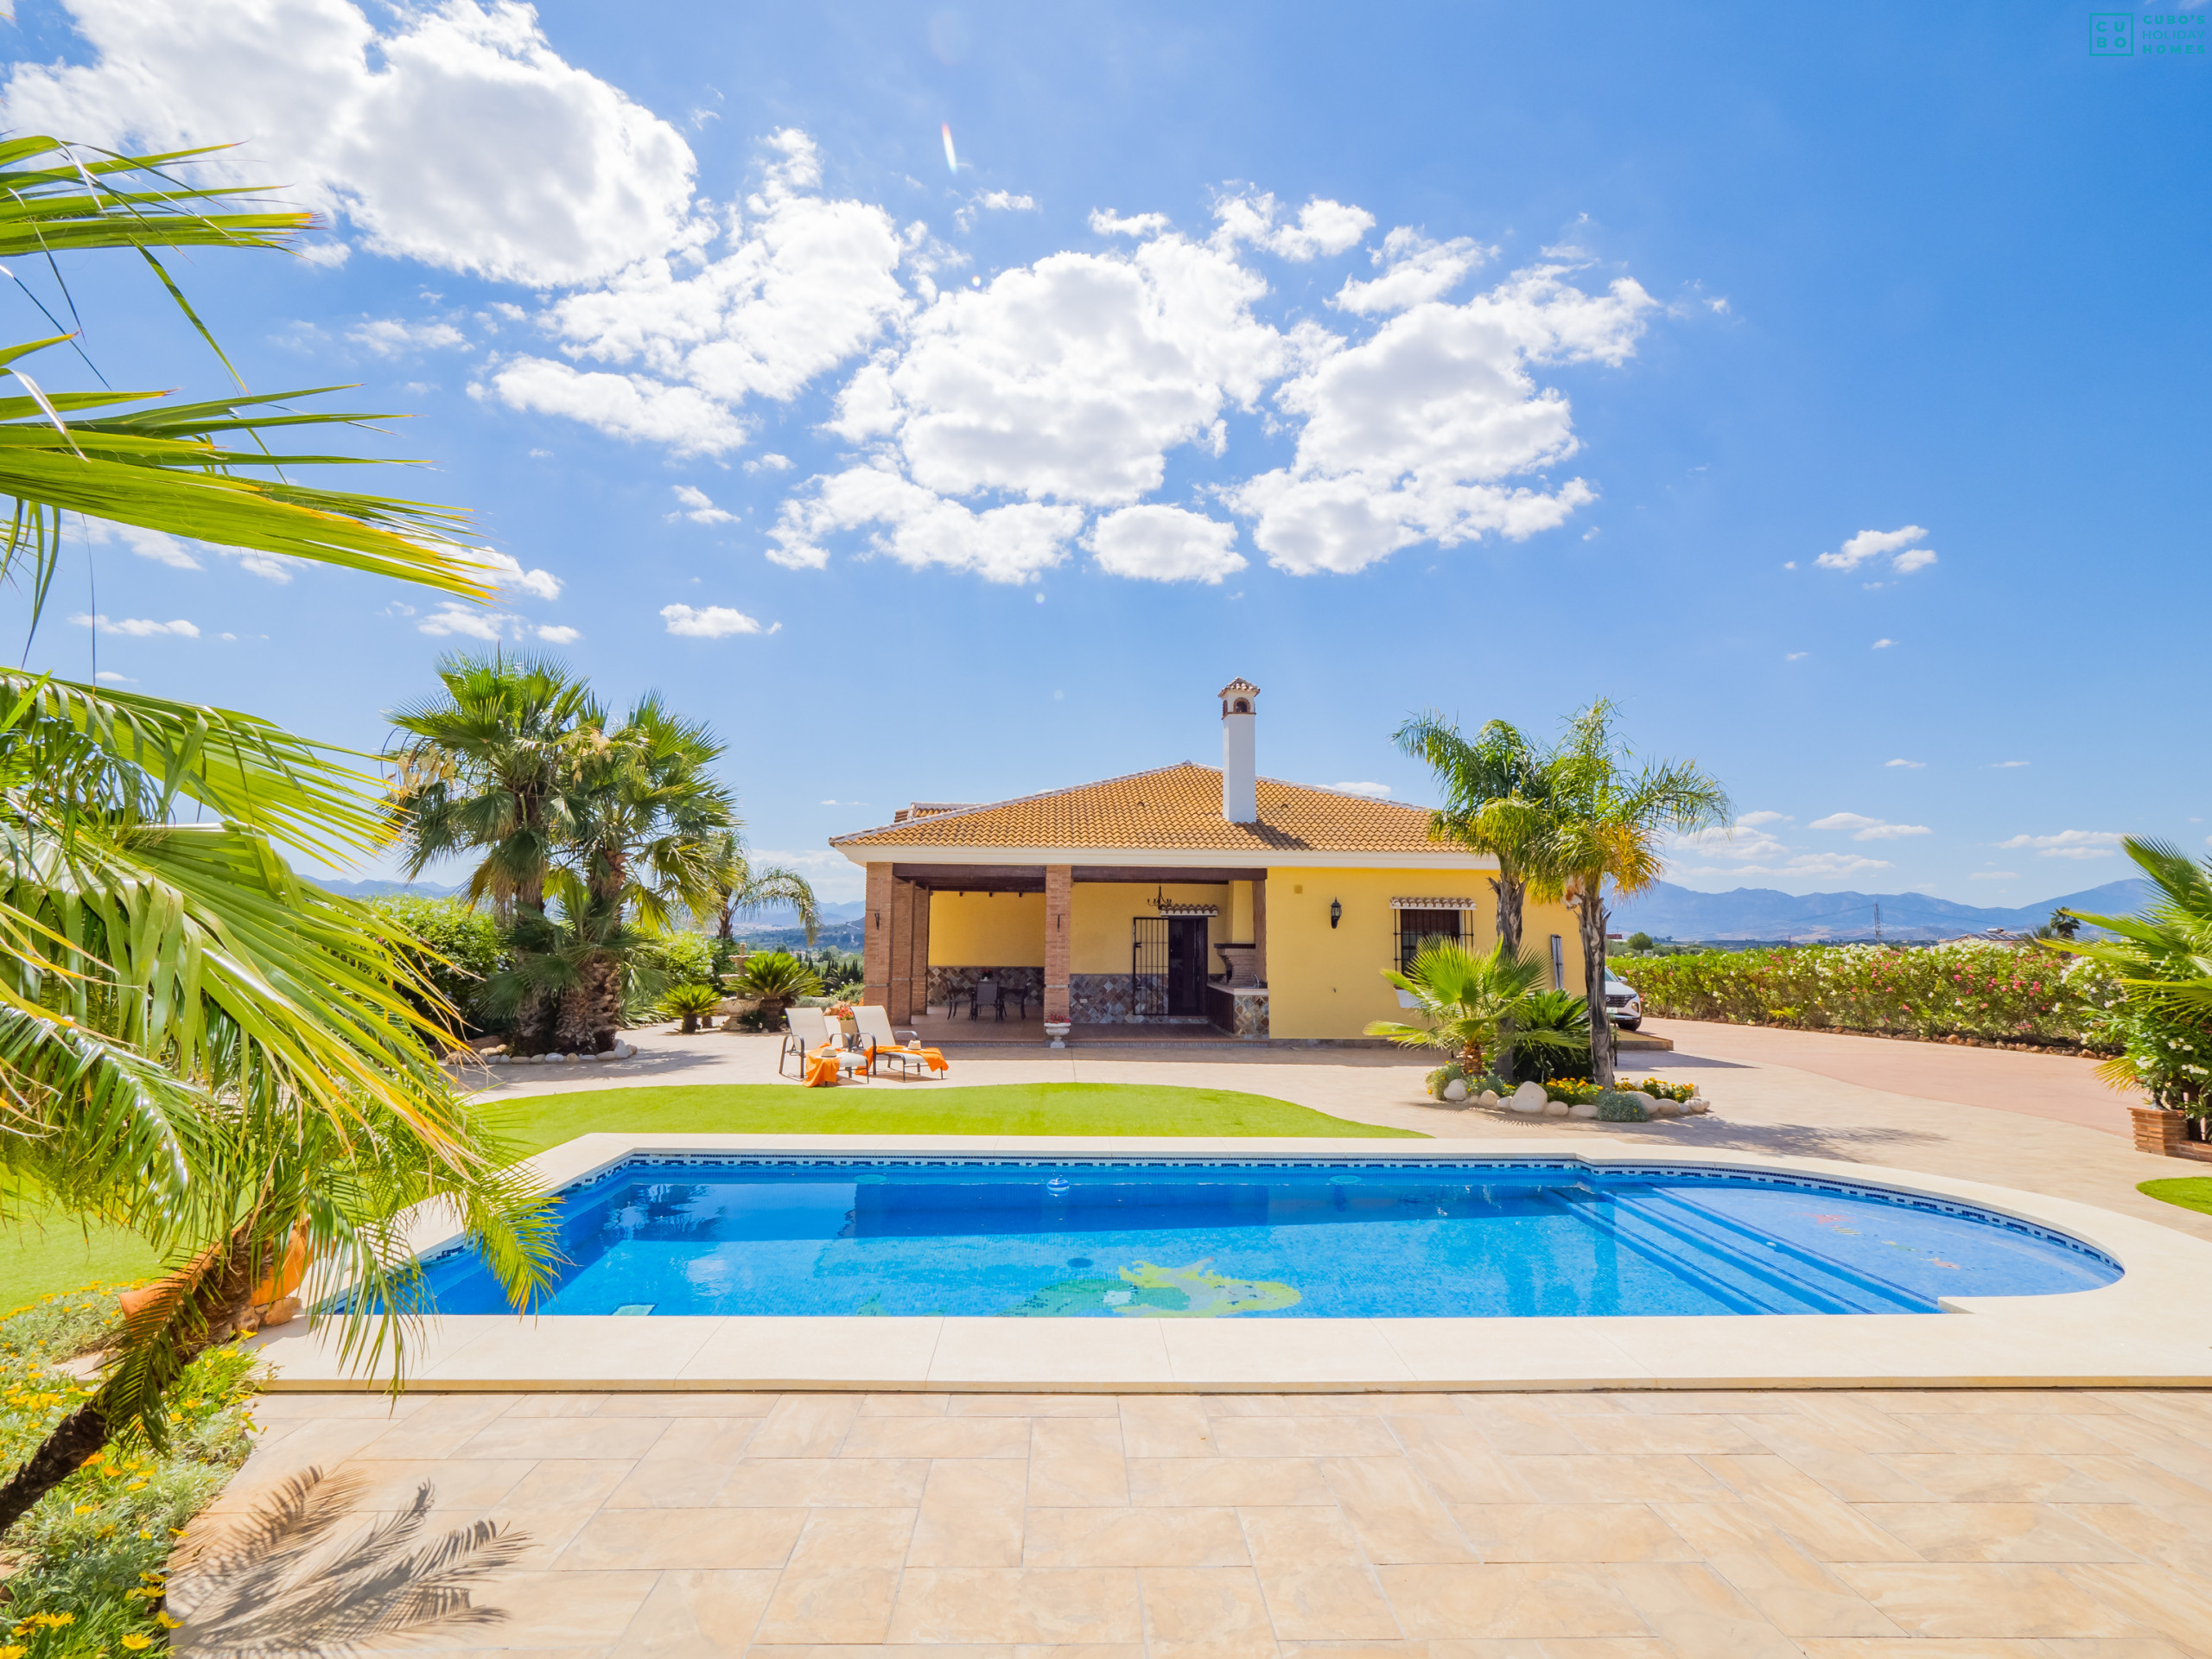 Alojamiento familiar con piscina privada en Málaga